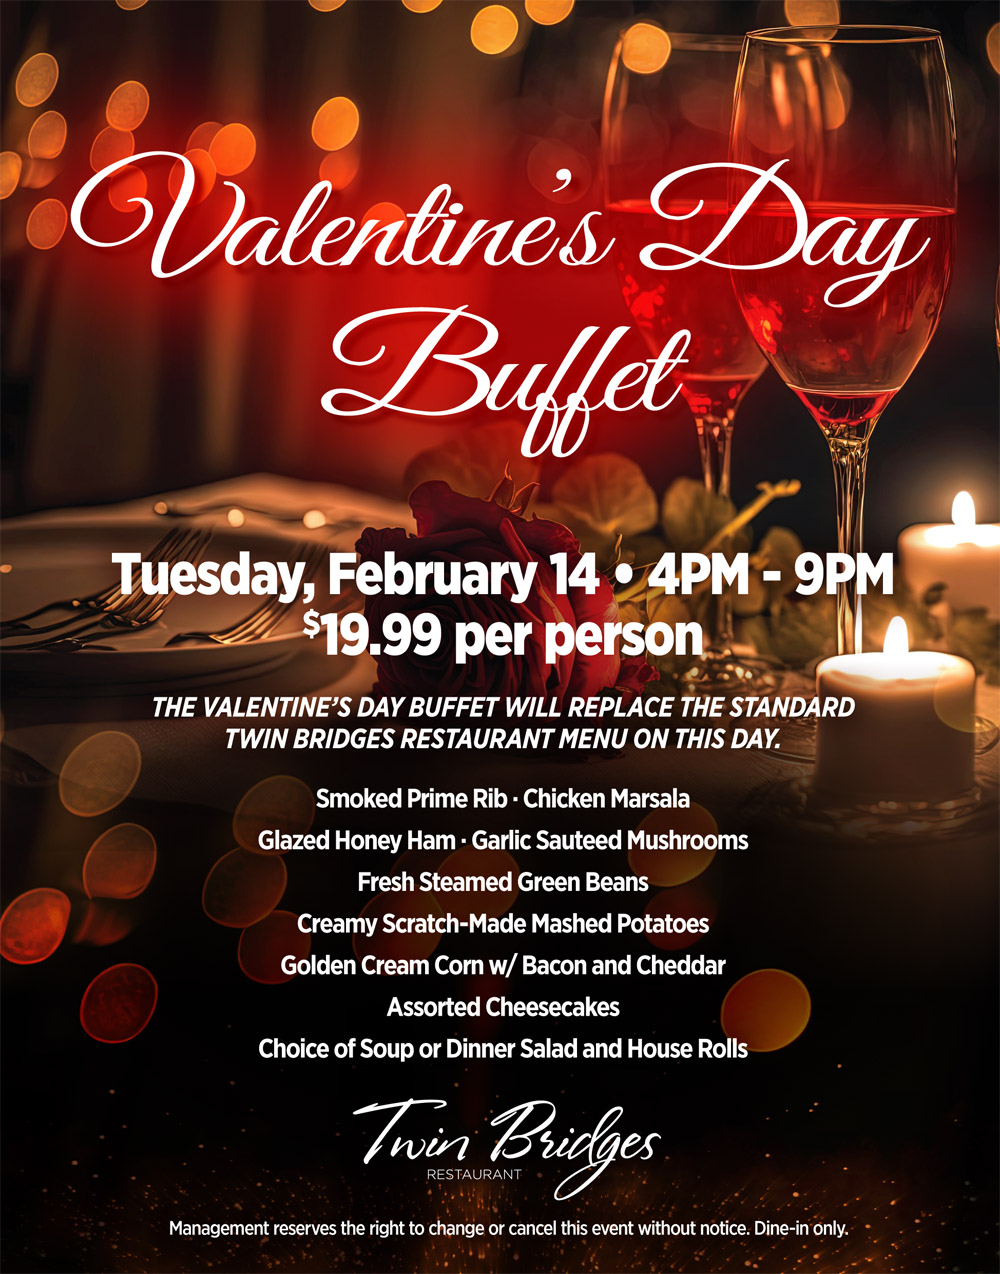 Twin Bridges Restaurant Valentine's Day Buffet